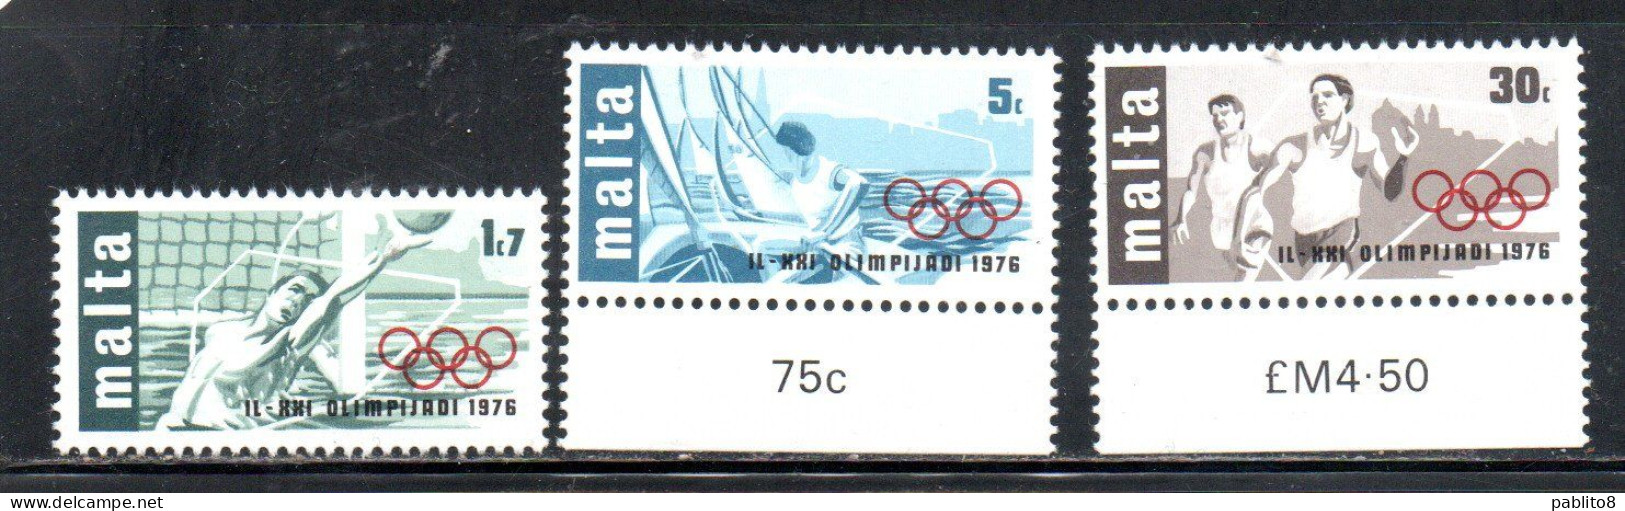 MALTA 1976 OLYMPIC GAMES MONTREAL CANADA GIOCHI OLIMPICI OLIMPIADE COMPLETE SET SERIE COMPLETA MNH - Malte